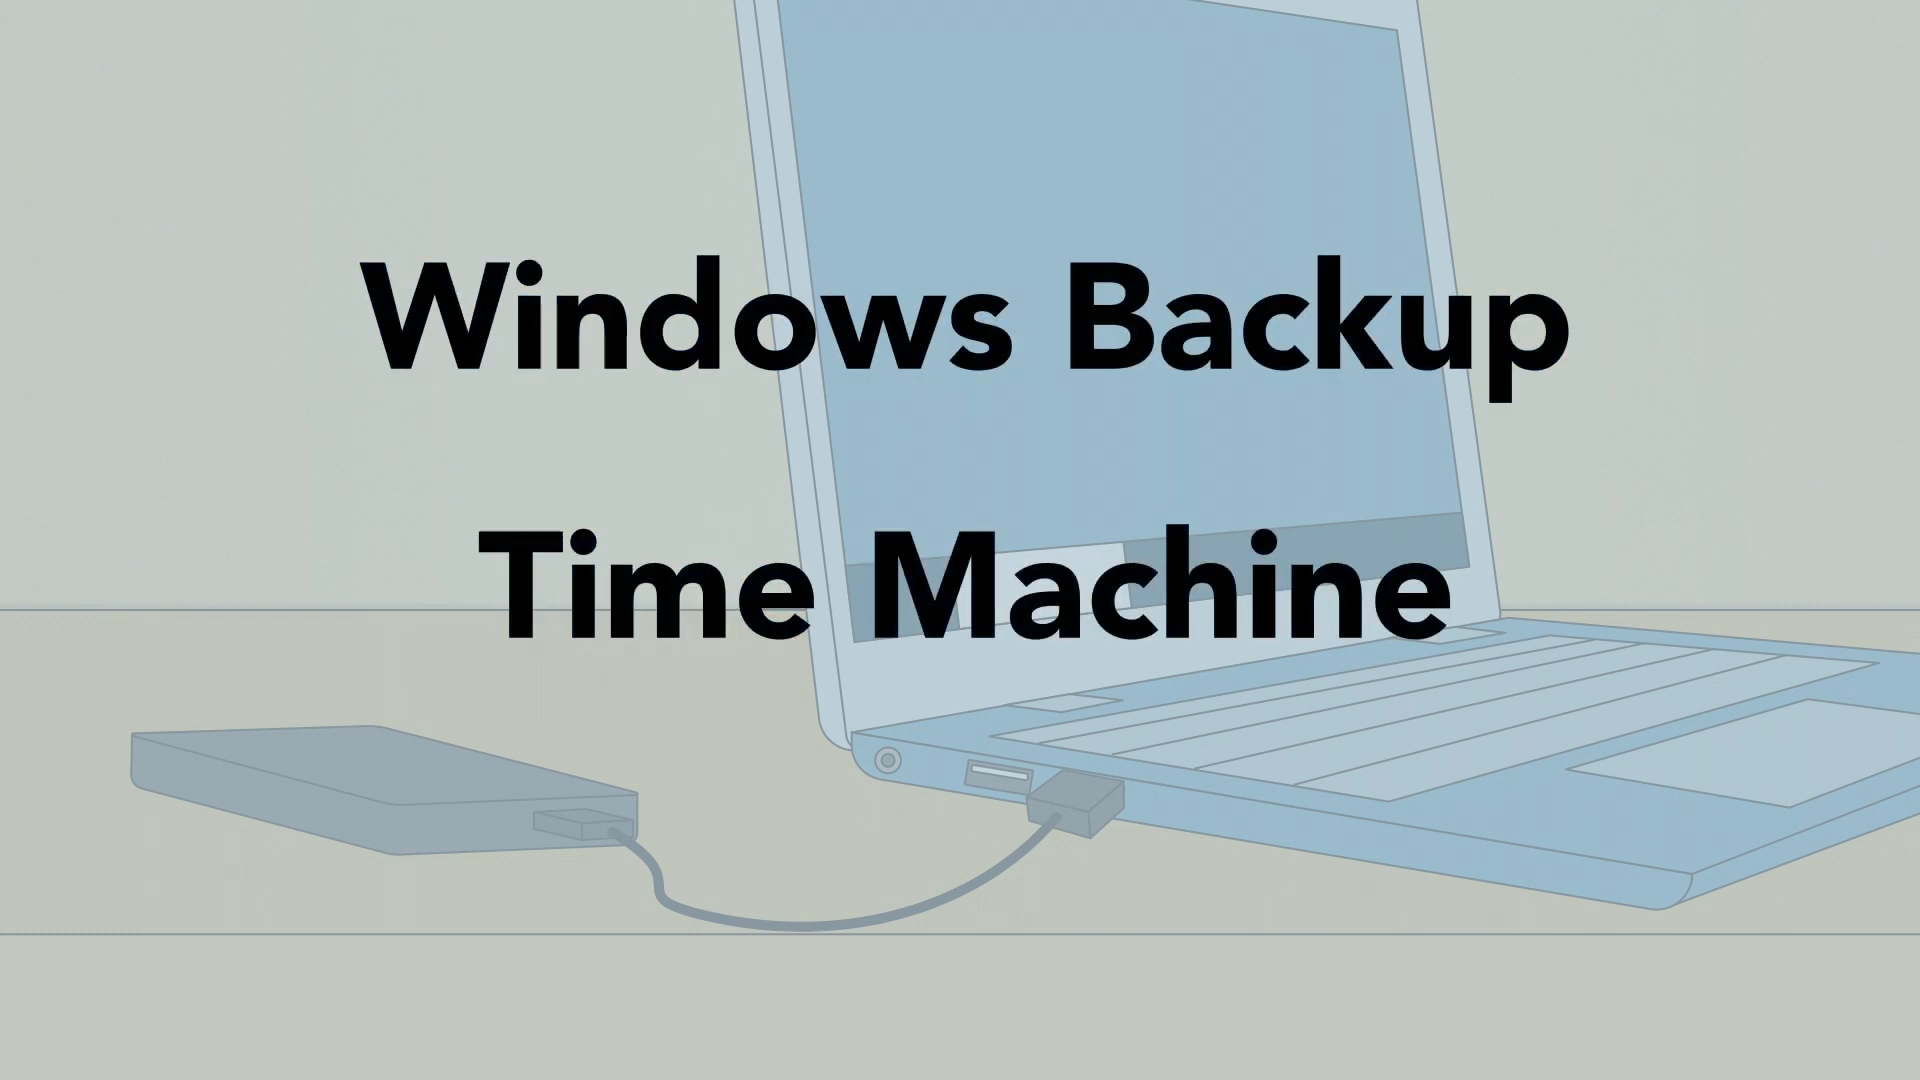 Windows Backup e Time Machine são softwares que ajudam a fazer um backup do seu computador